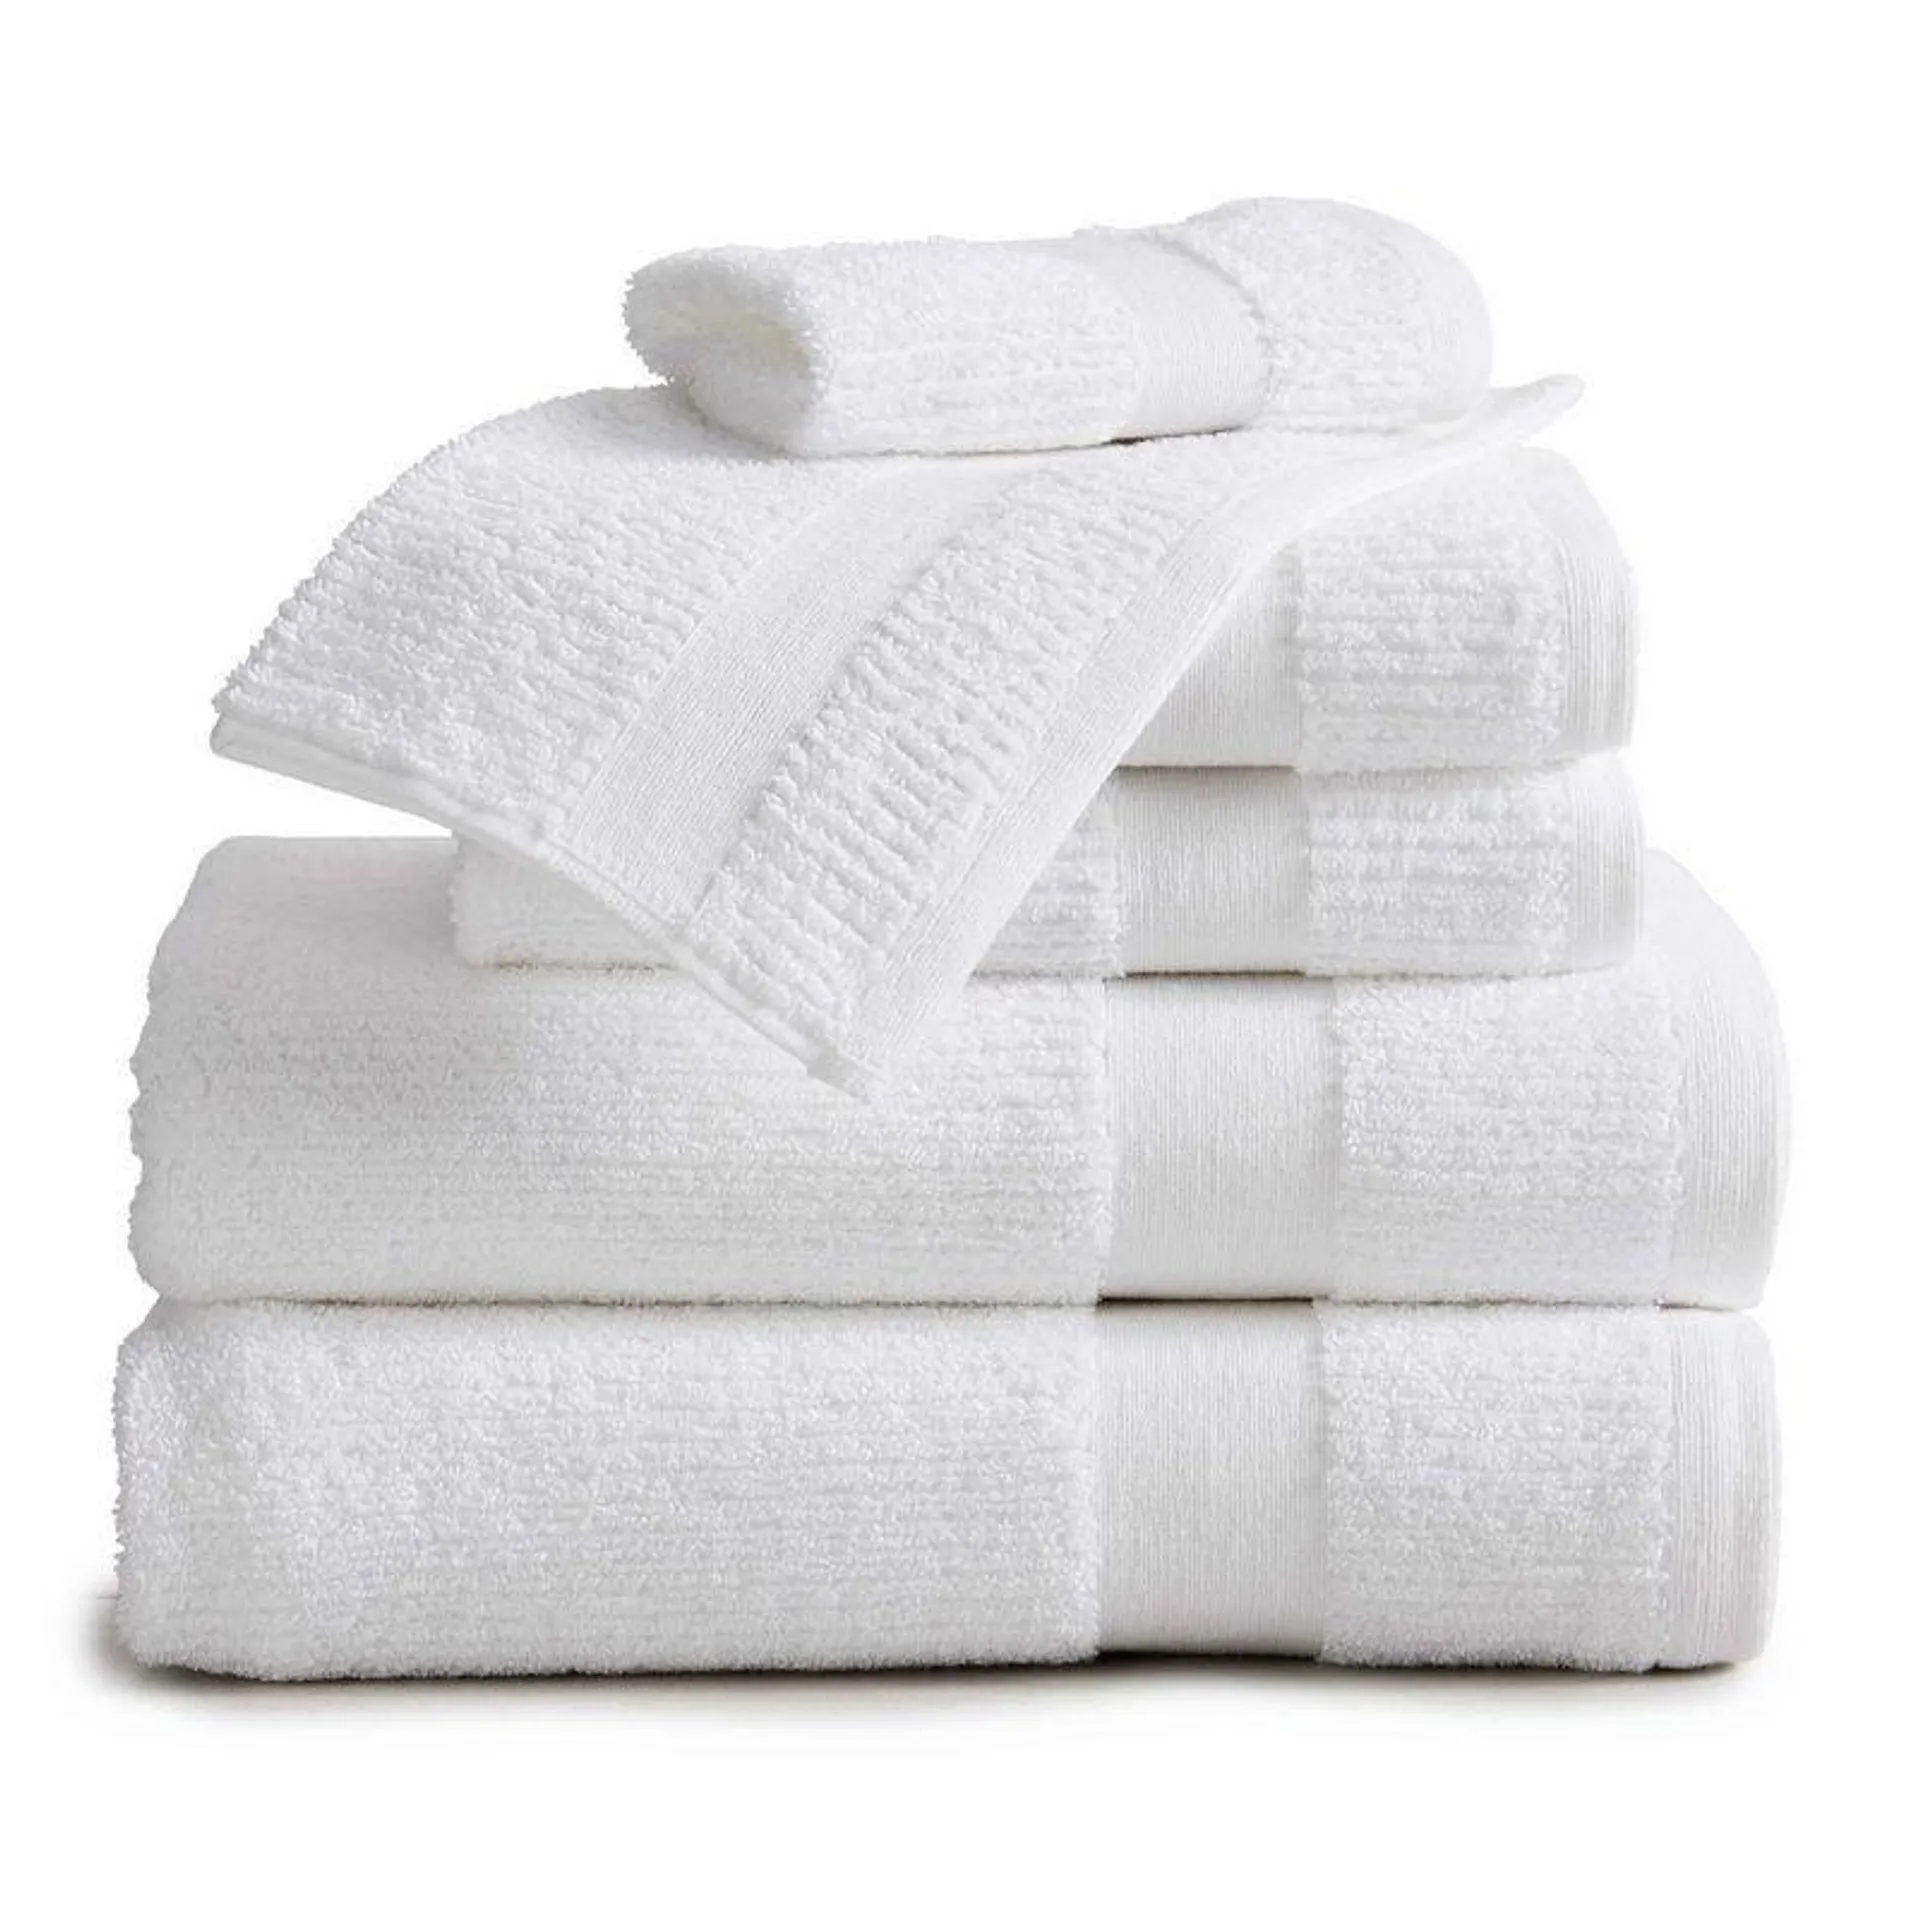 Market & Place Cotton Quick Dry Ribbed 6-Piece Bath Towel Set